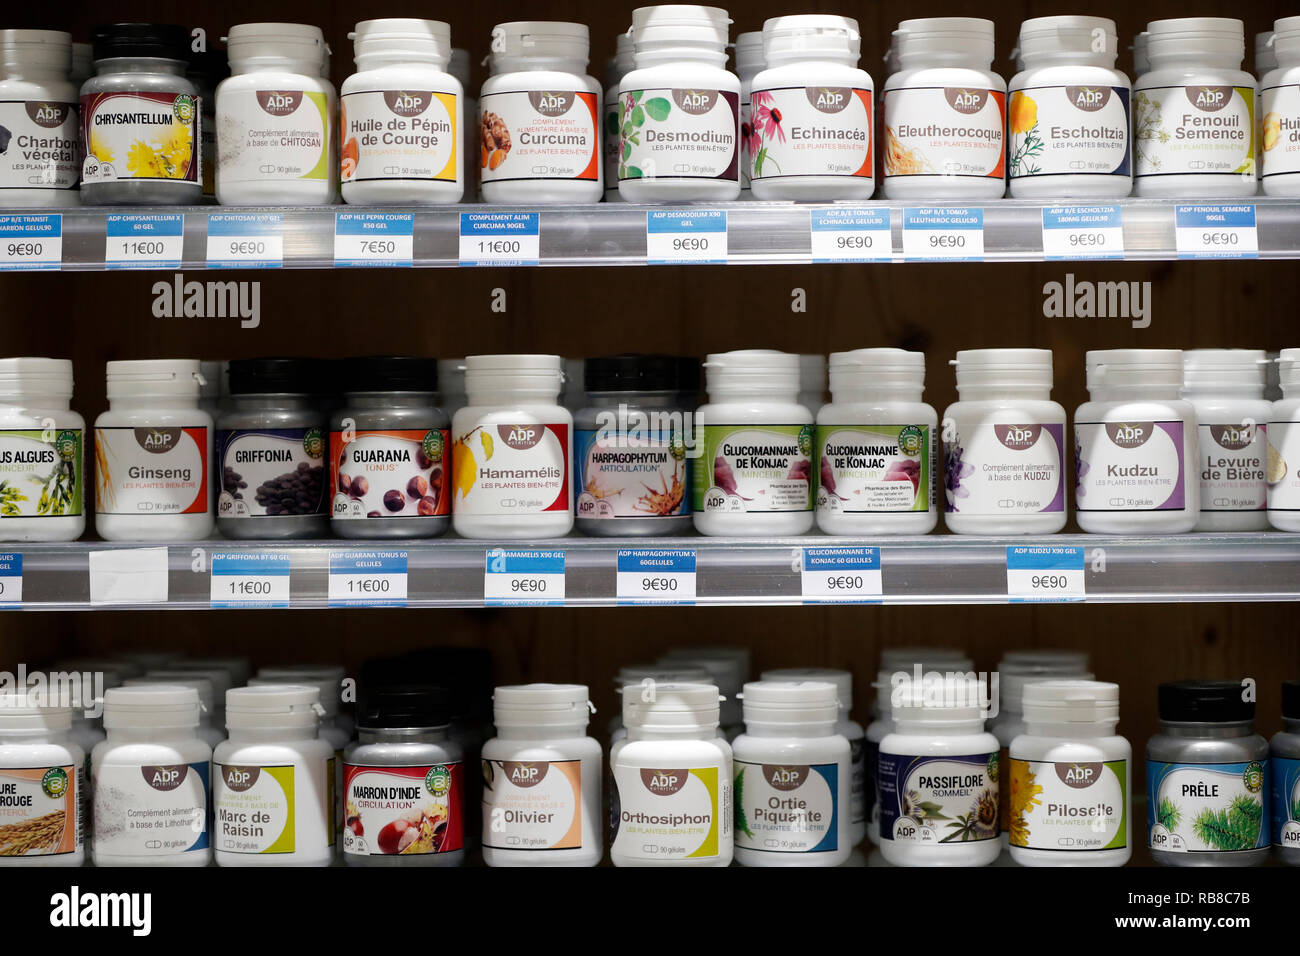 Pharmacy. Medicine in shelves. Natural medicine. France. Stock Photo